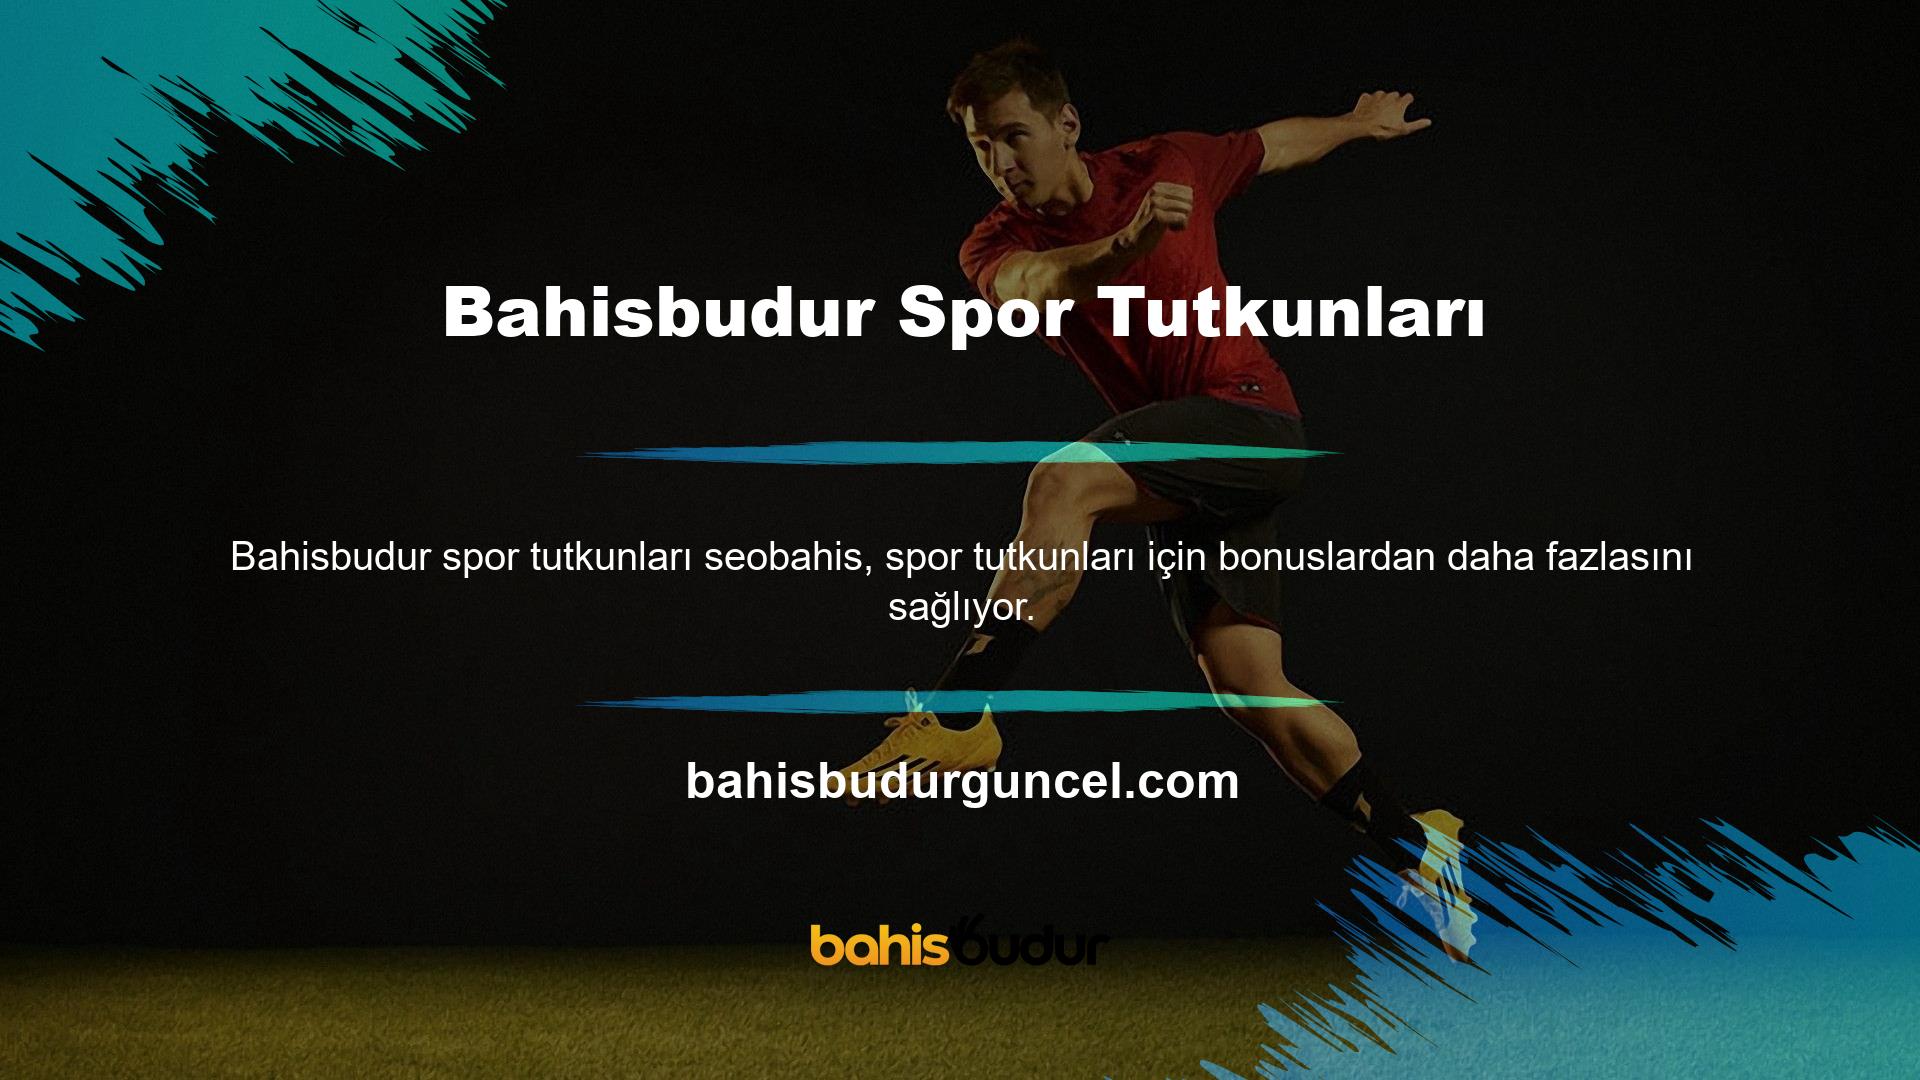 Bahisbudur Spor Kaybı Bonusu, yüksek riskli oyunlara bahis oynamayı seven üyeler için oldukça aranan bir teşviktir